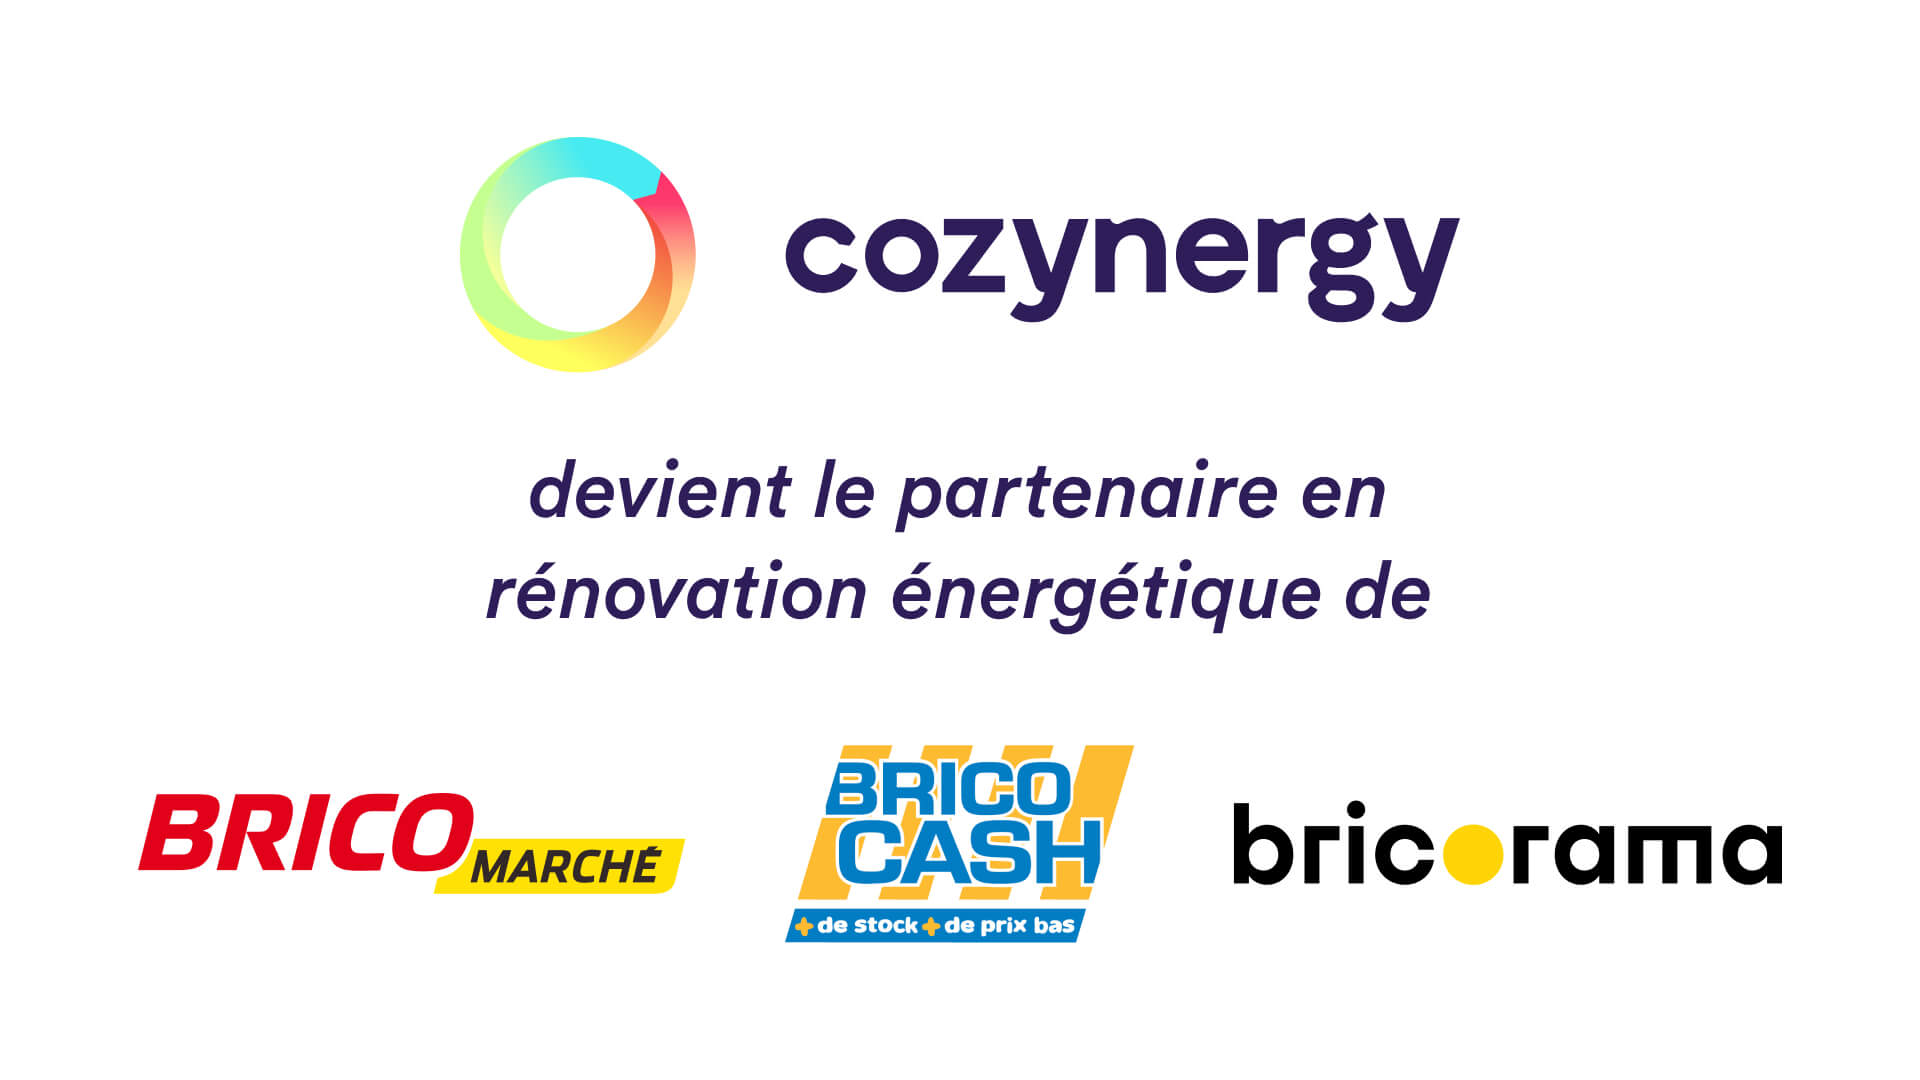 Cozynergy devient le partenaire en rénovation énergétique de Bricomarché, Brico Cash et Bricorama